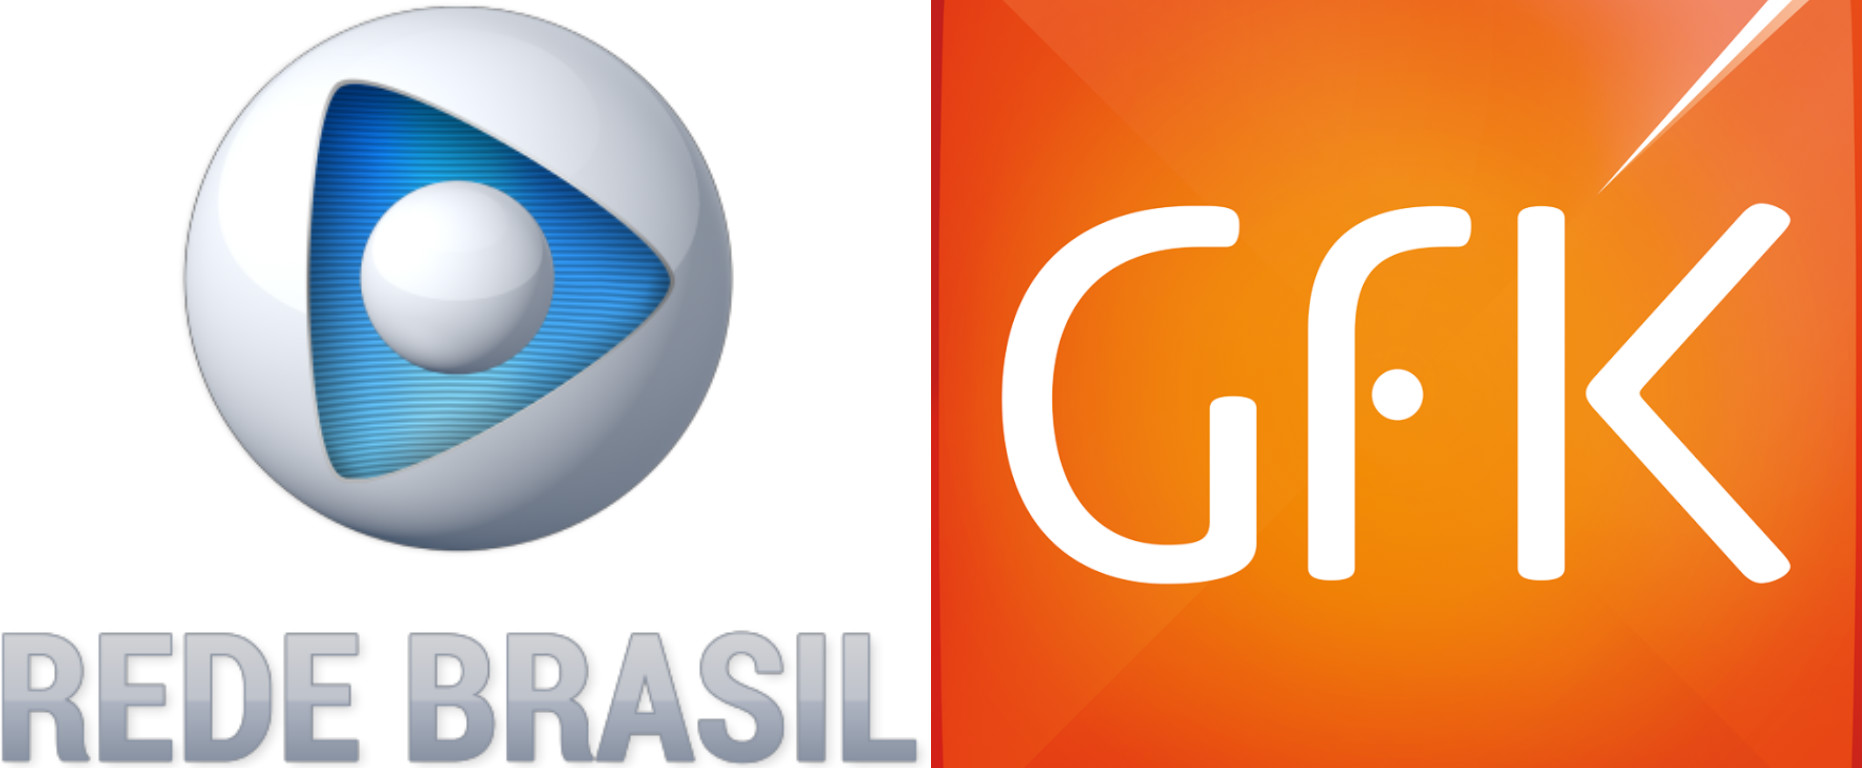 Rede Brasil assina contrato com o GfK